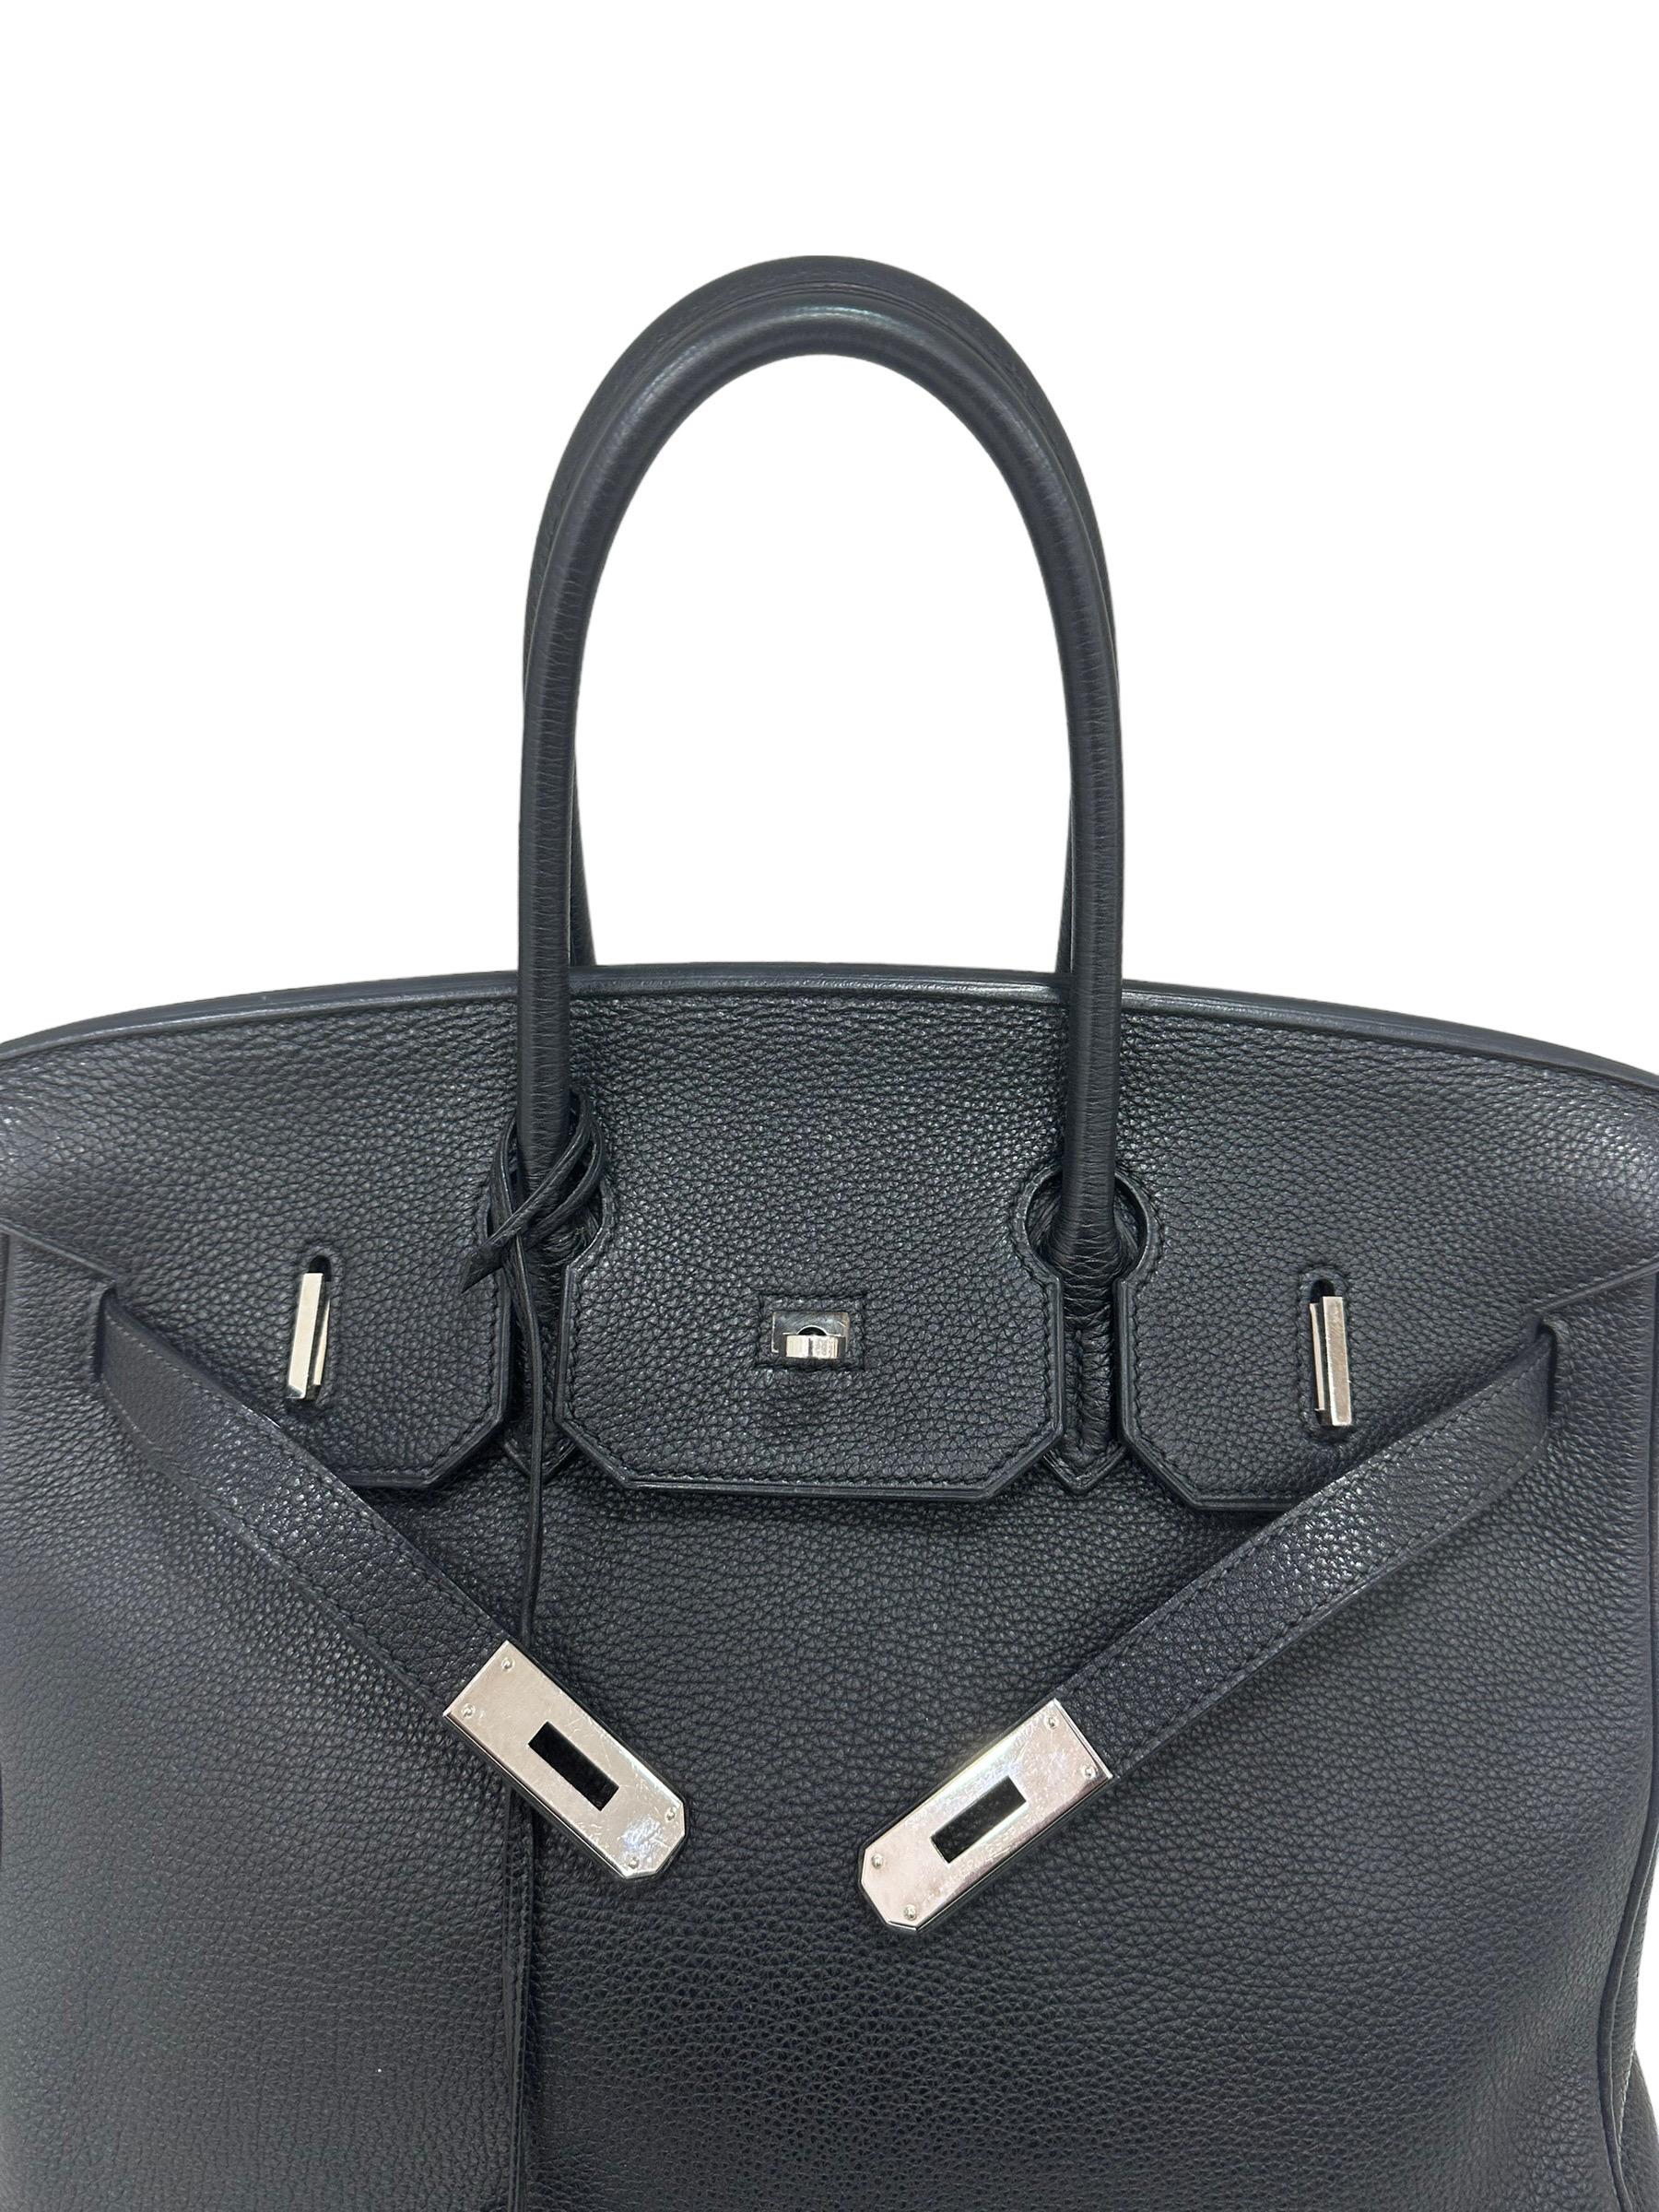 2007 Hermès Birkin Bag Togo Leather Plomb Top Handle Bag For Sale 4